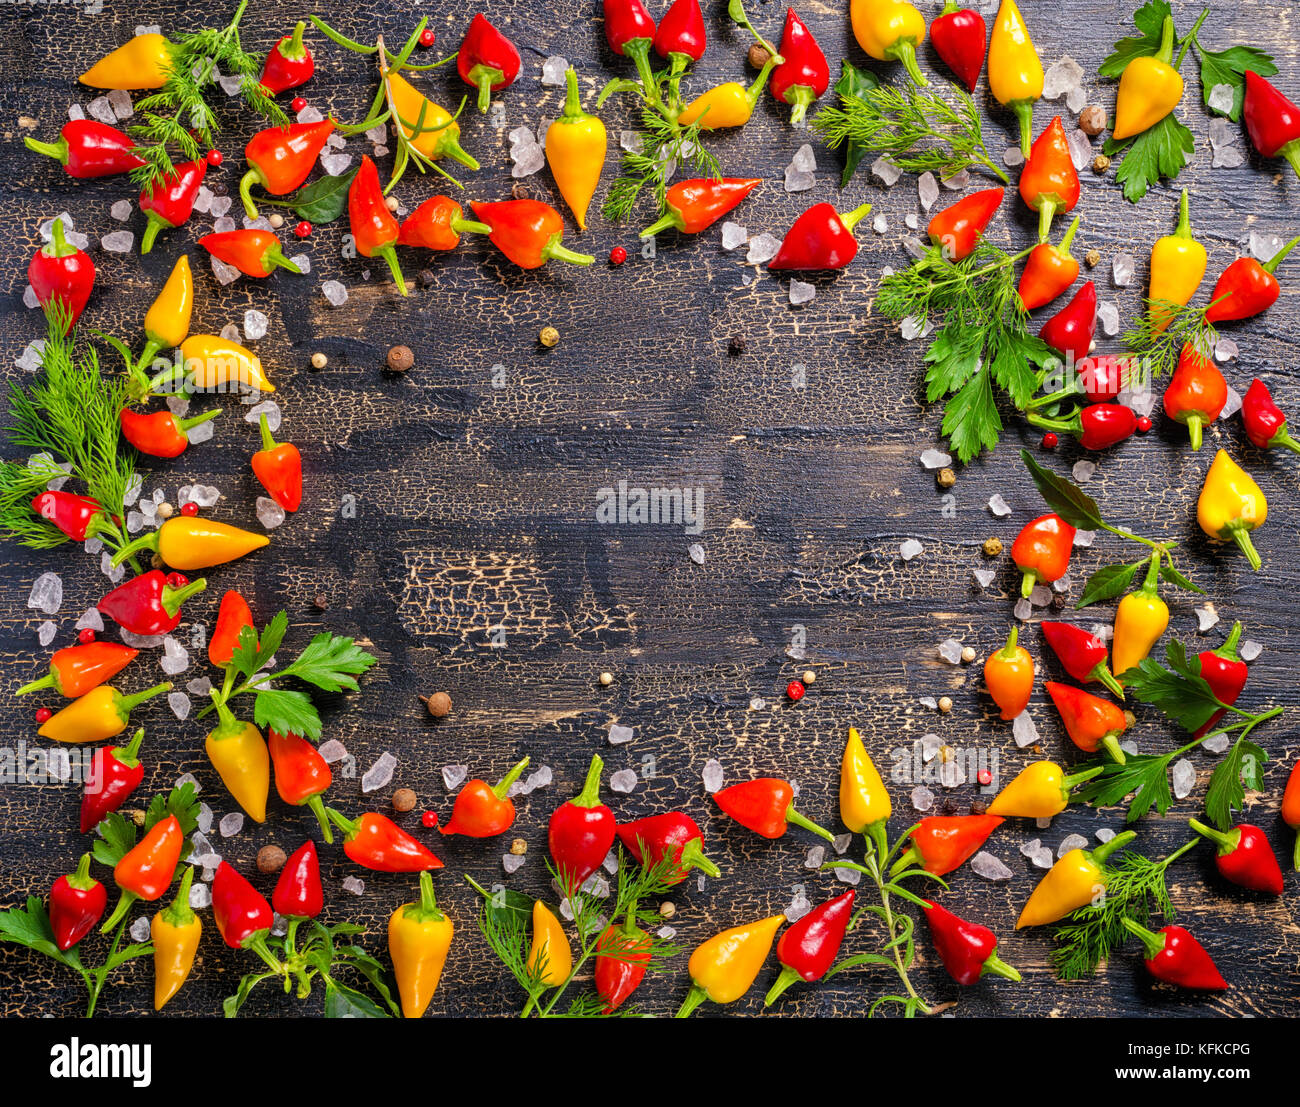 Vue de dessus d'épices à la frontière de dry et Hot Chili Peppers, sel de mer, verdure différentes fissures sur fond noir Banque D'Images